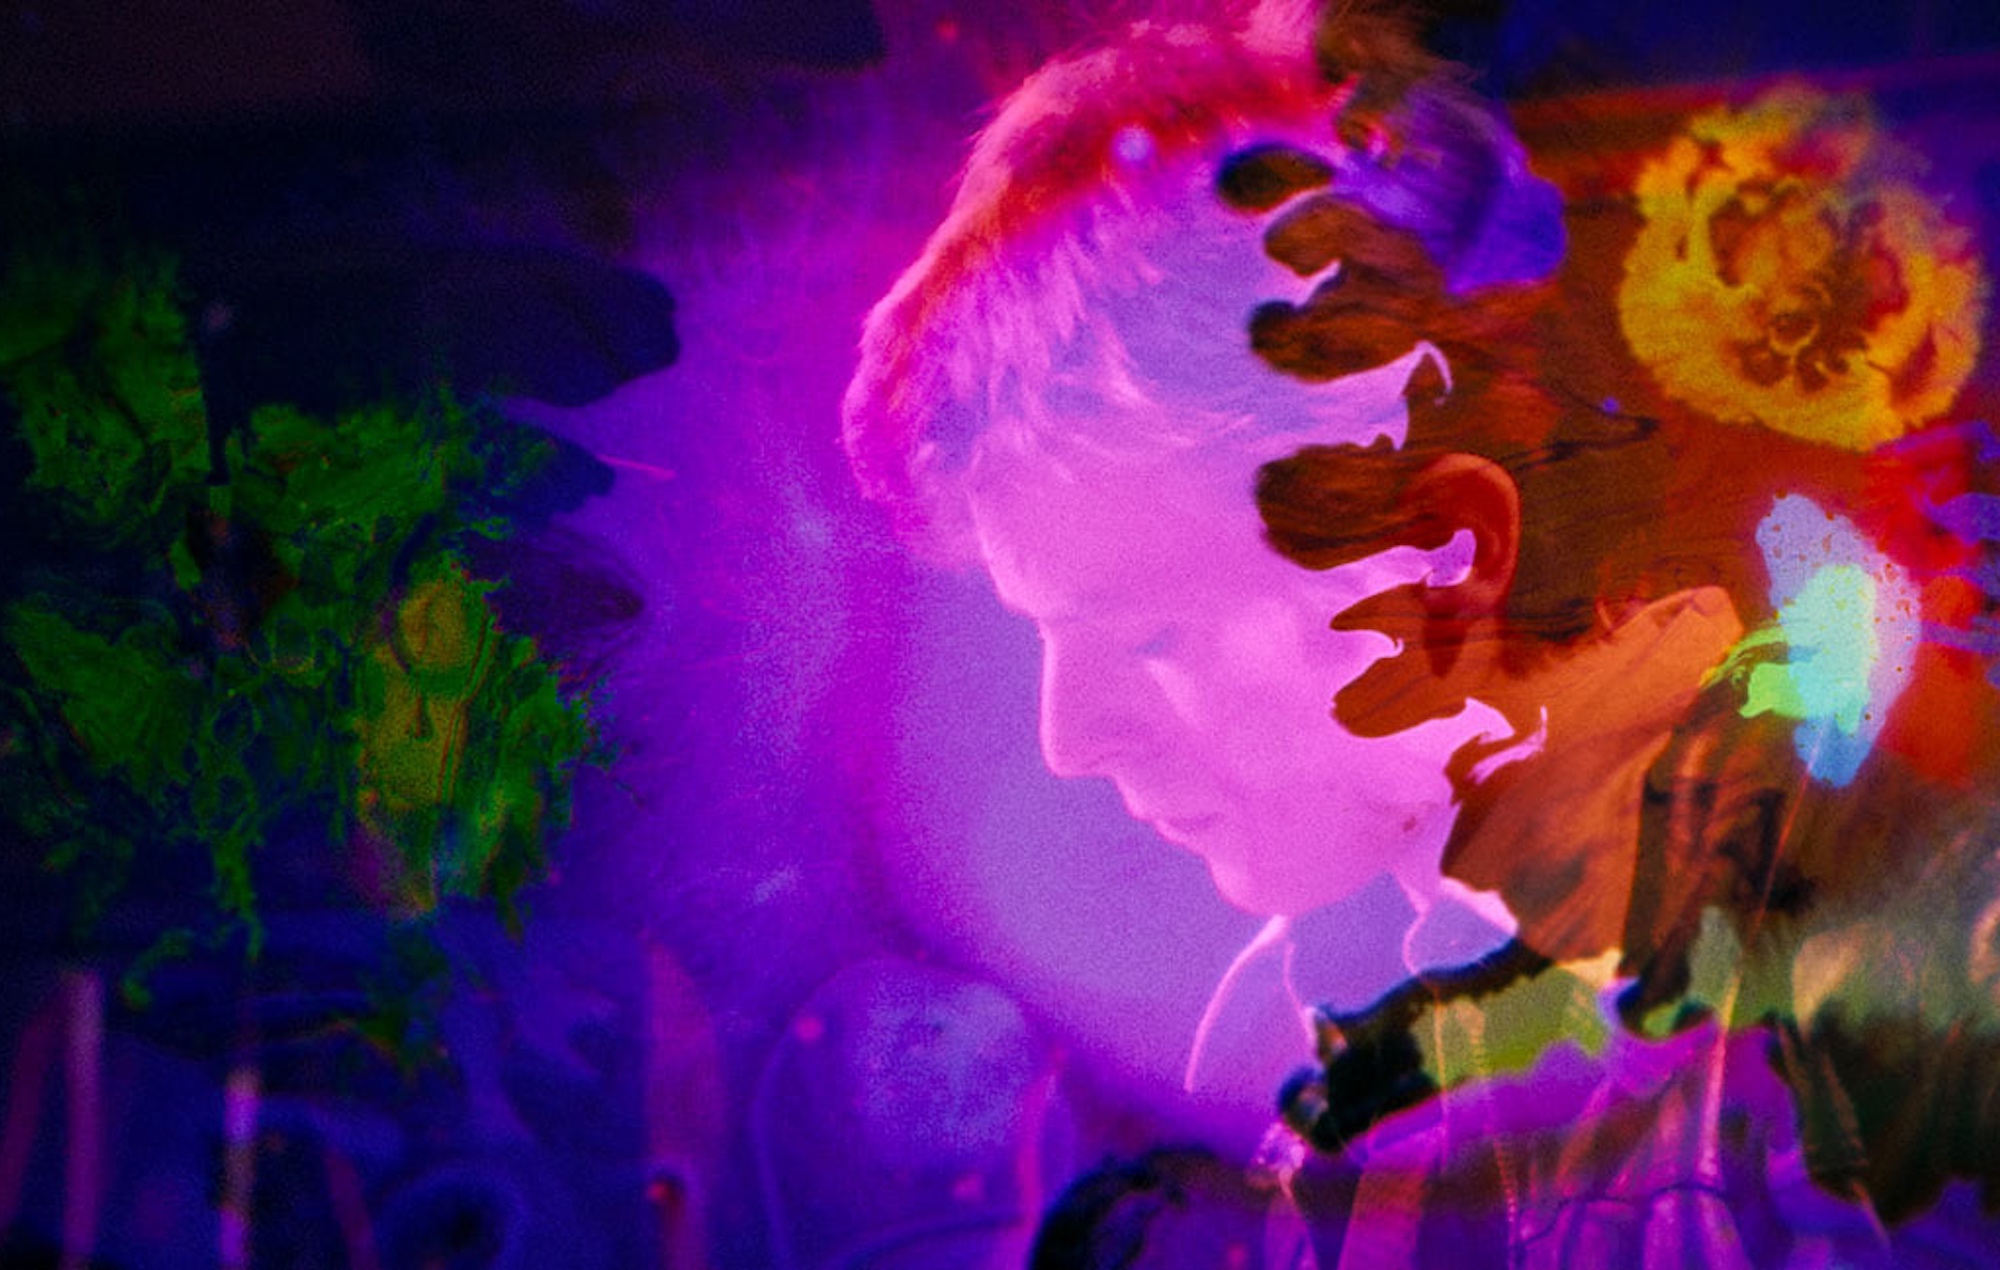 La herencia confirma que la película de David Bowie "Moonage Daydream" contiene imágenes inéditas